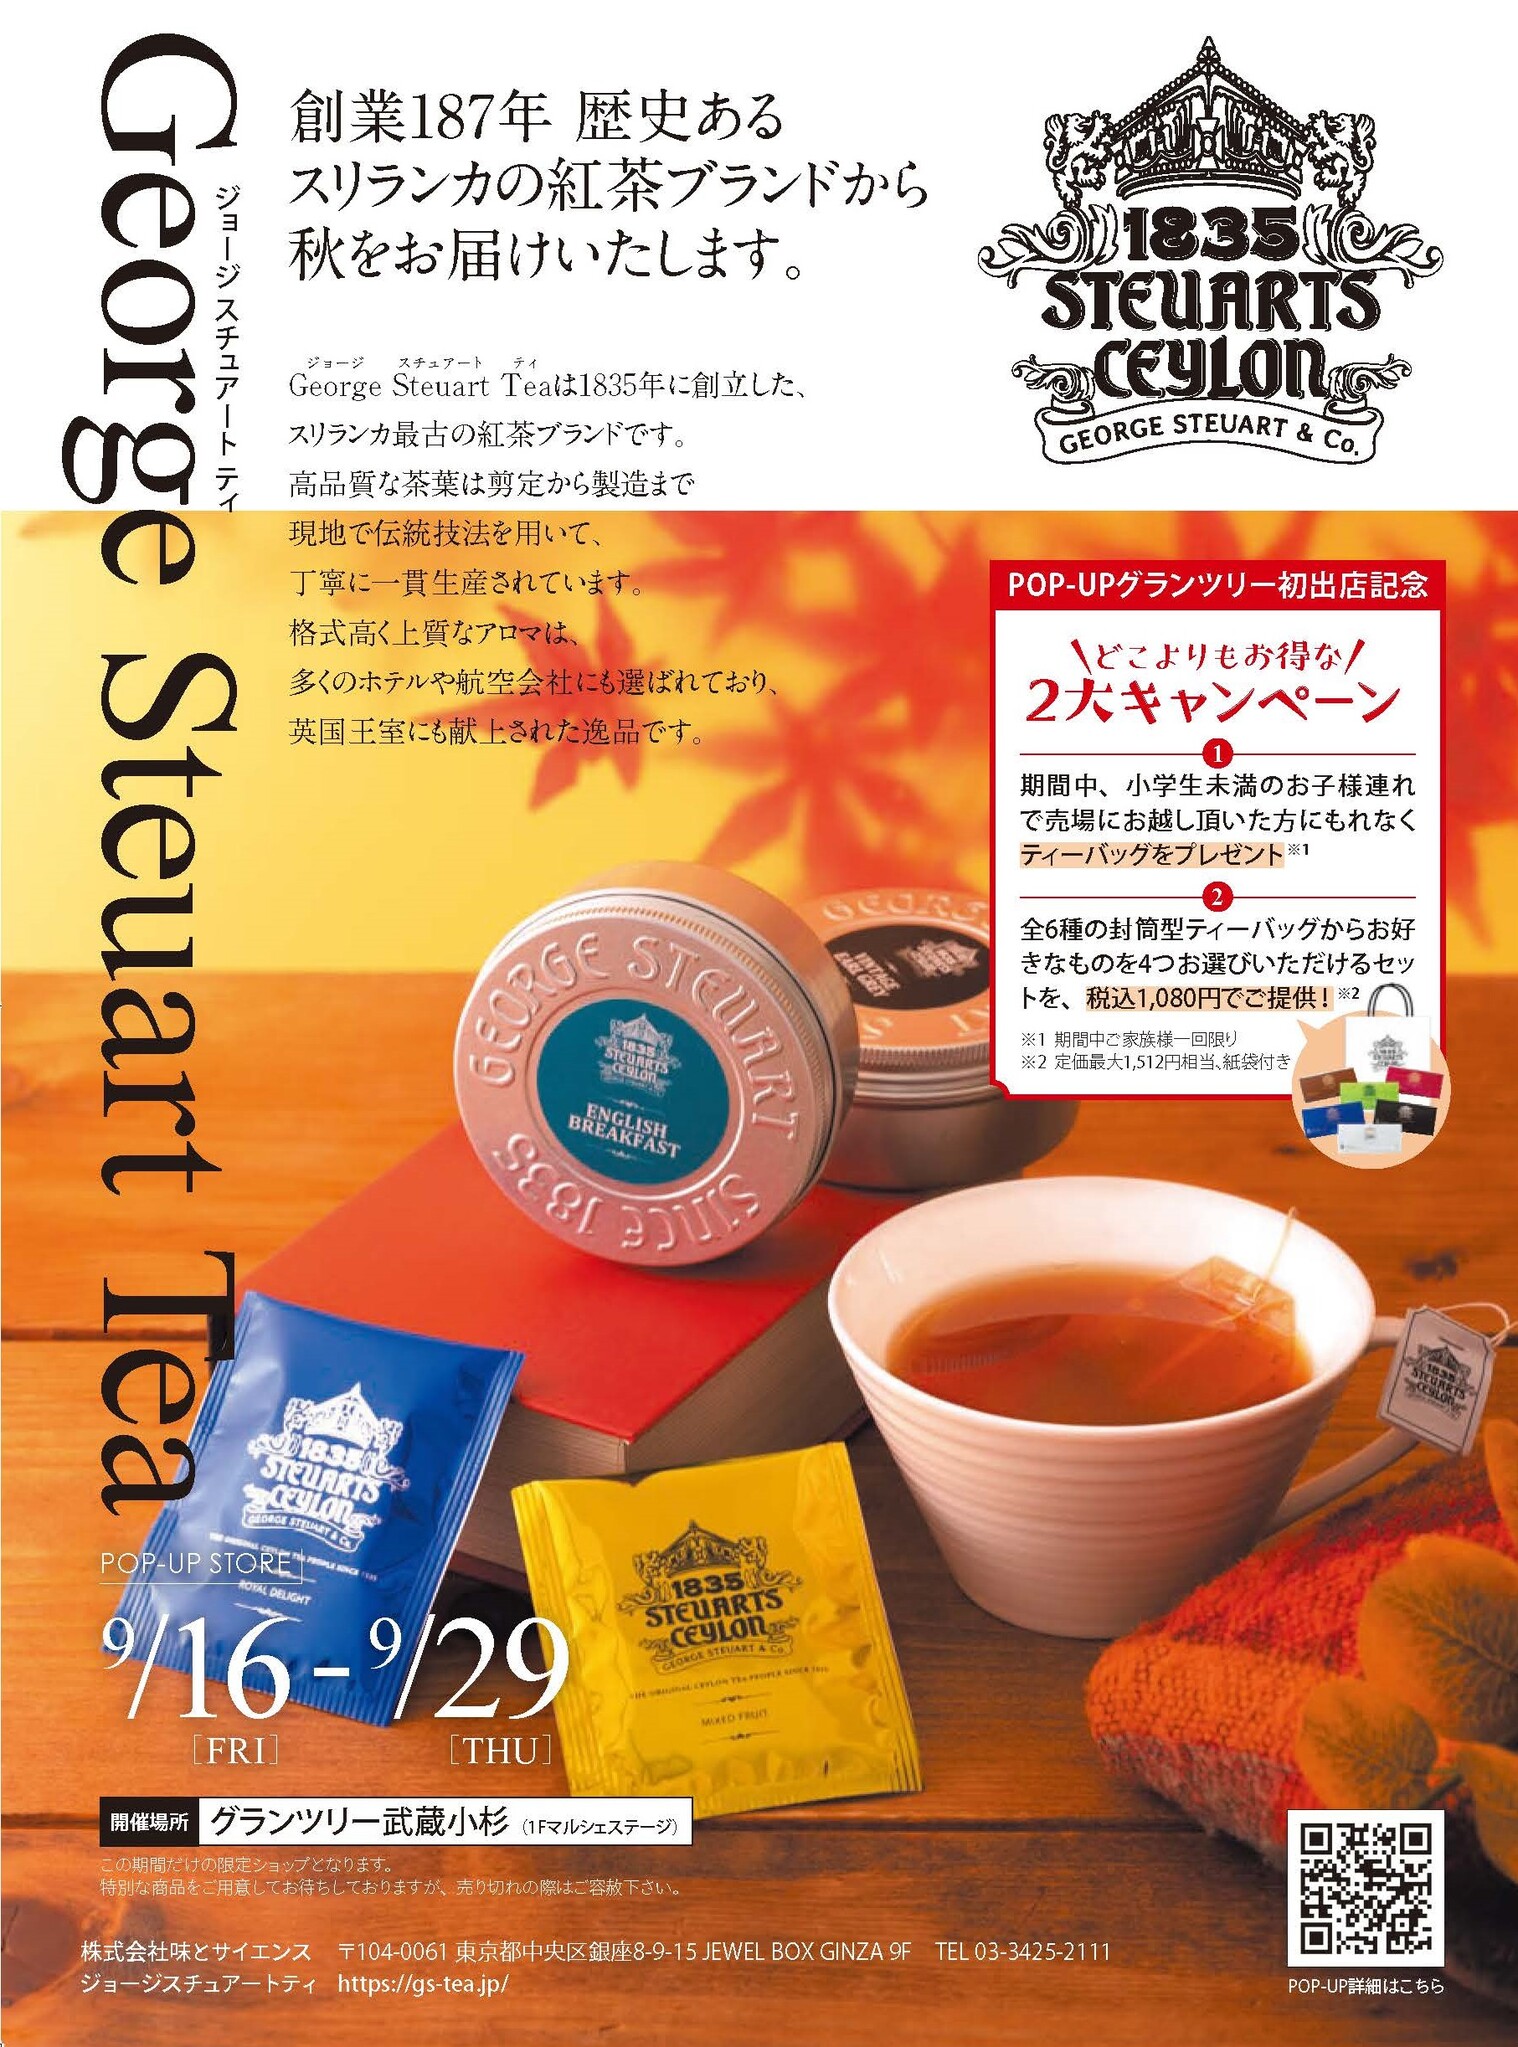 スリランカ最古の紅茶ブランド「George Steuart Tea」が秋をお届け